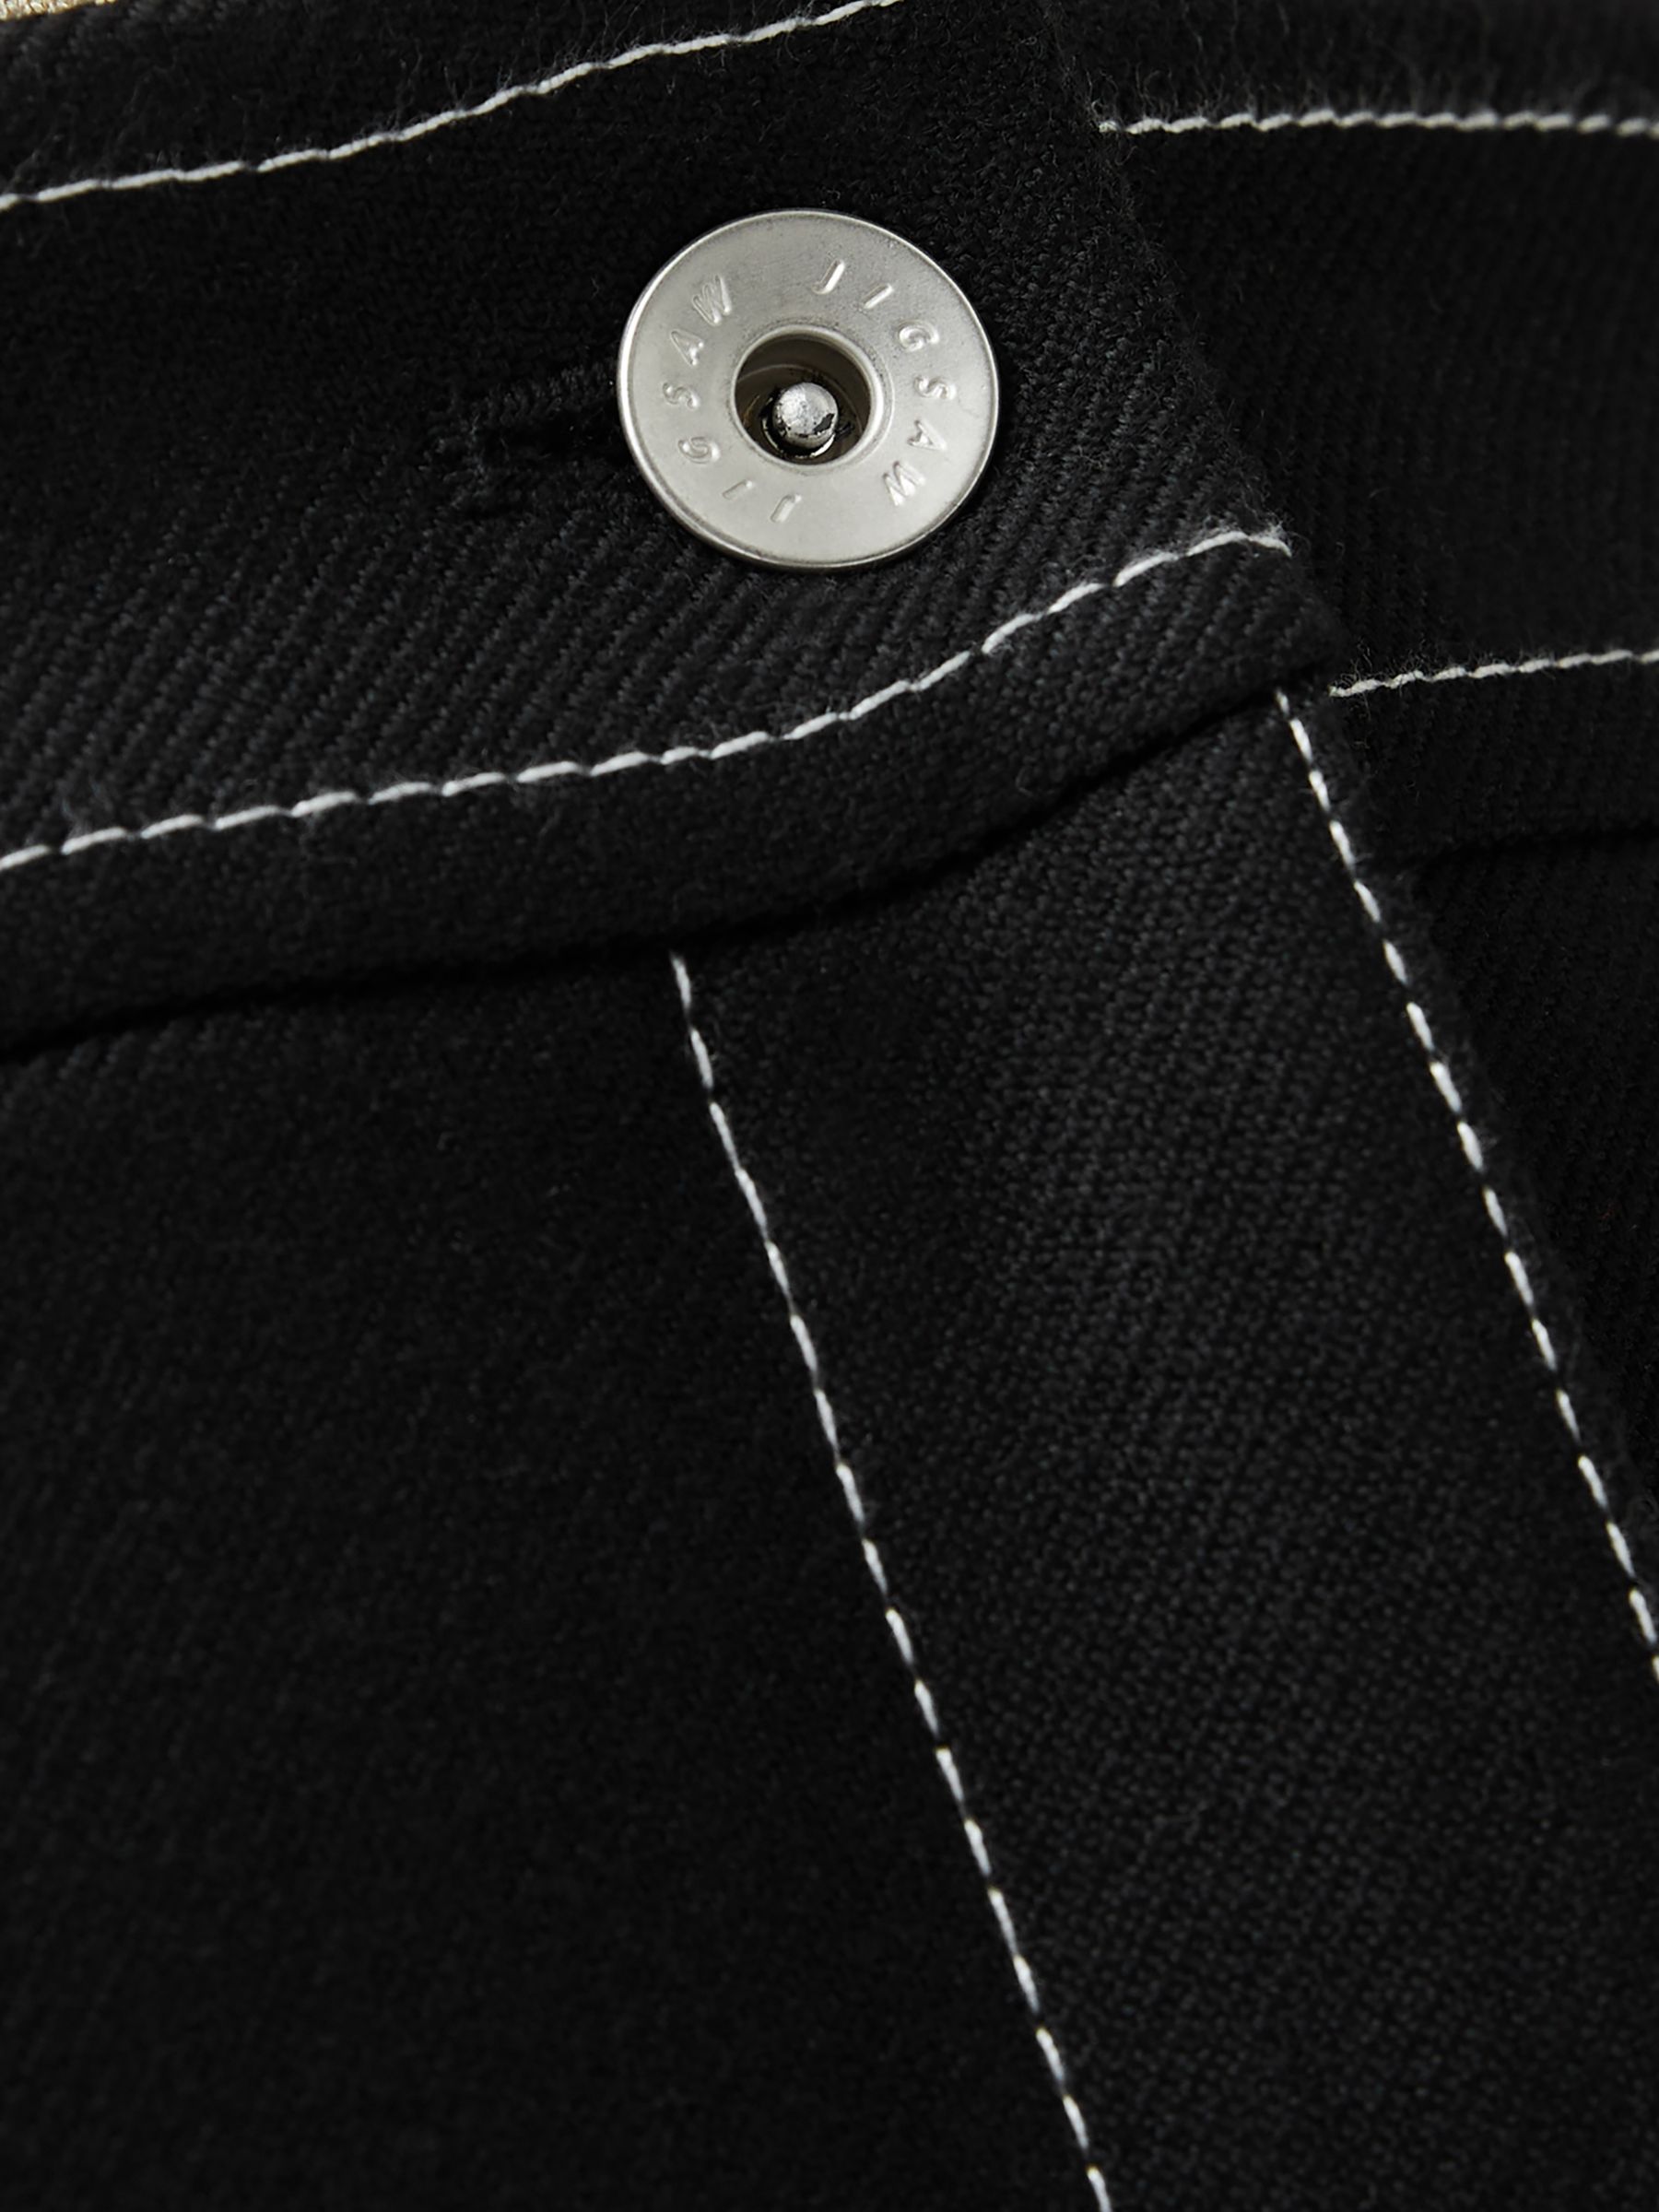 Buy Jigsaw Seamed Detail Midi Skirt Online at johnlewis.com